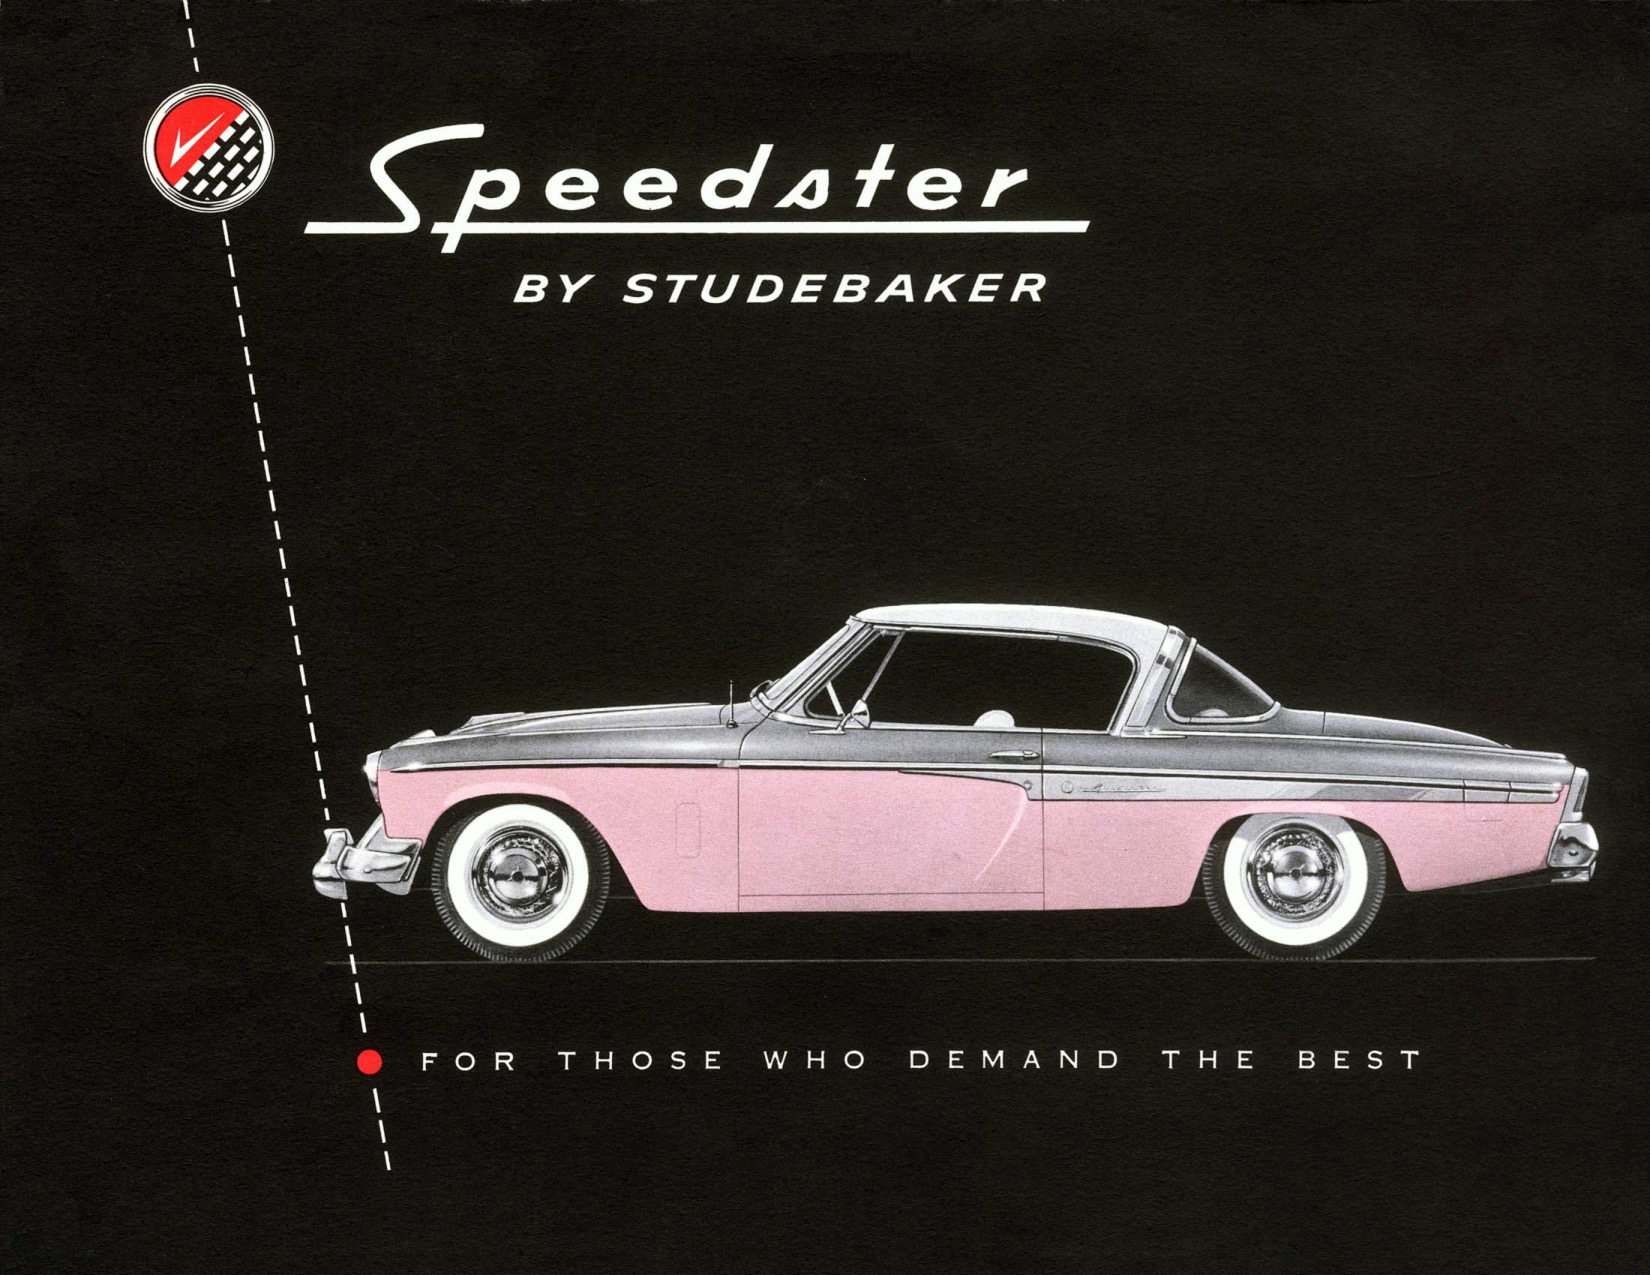 1955 Studebaker President Speedster Brochure